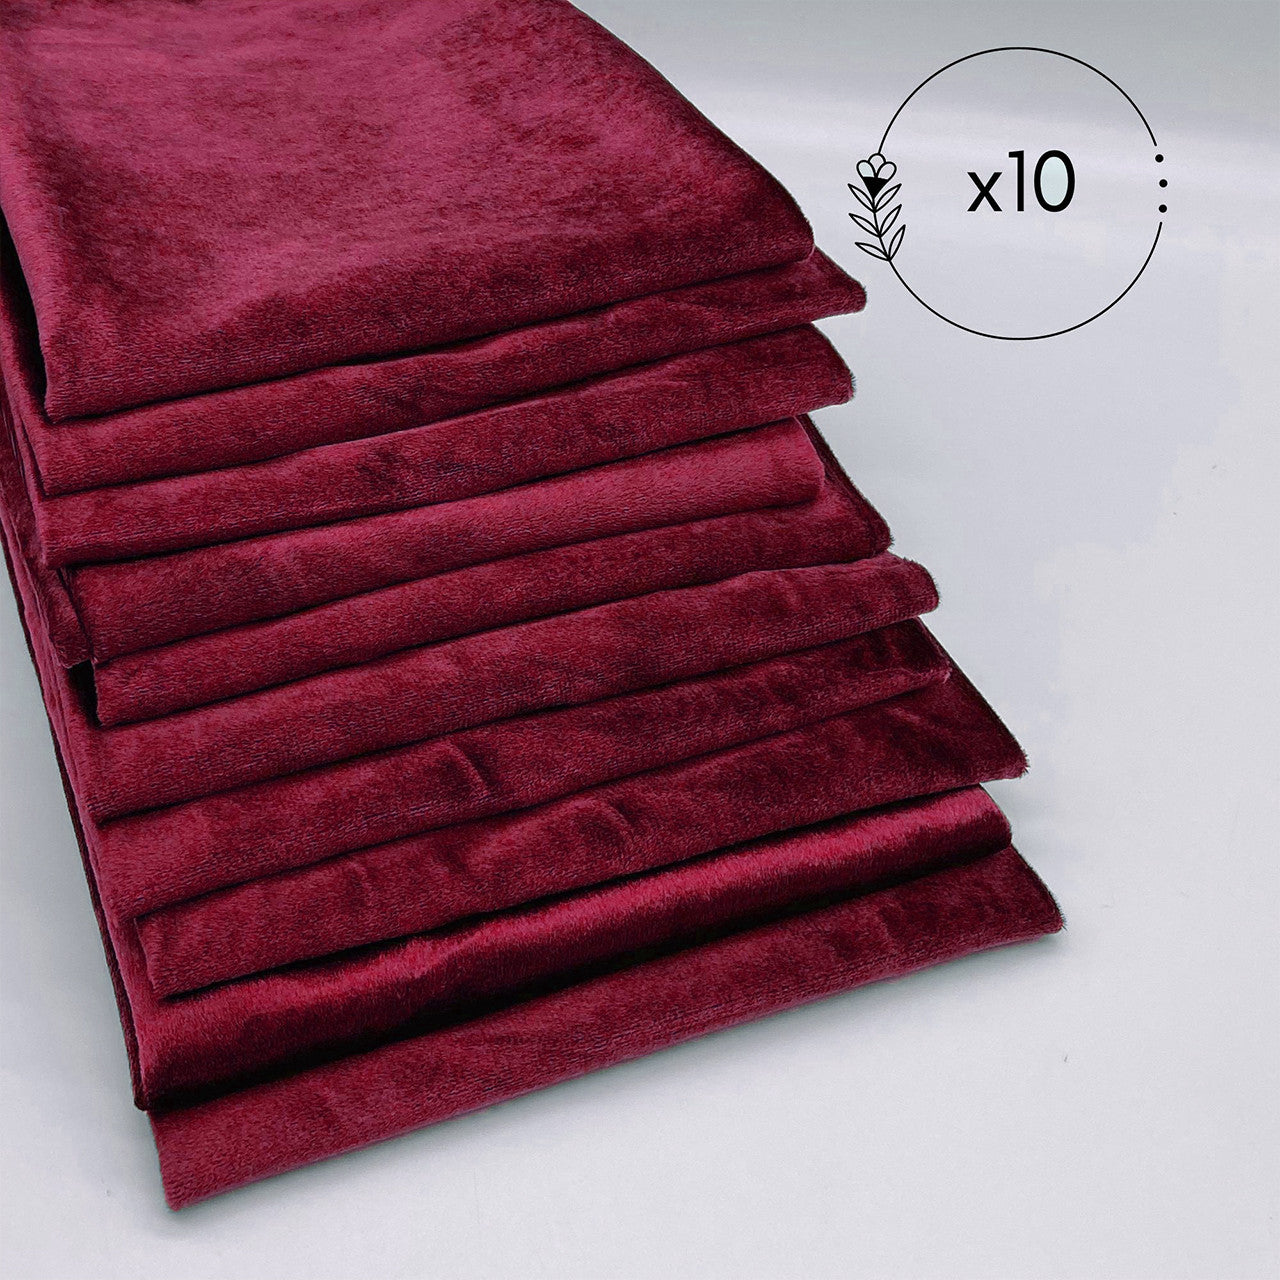 20 Inch Royal Velvet Cloth Napkins Burgundy (Pack of 10)